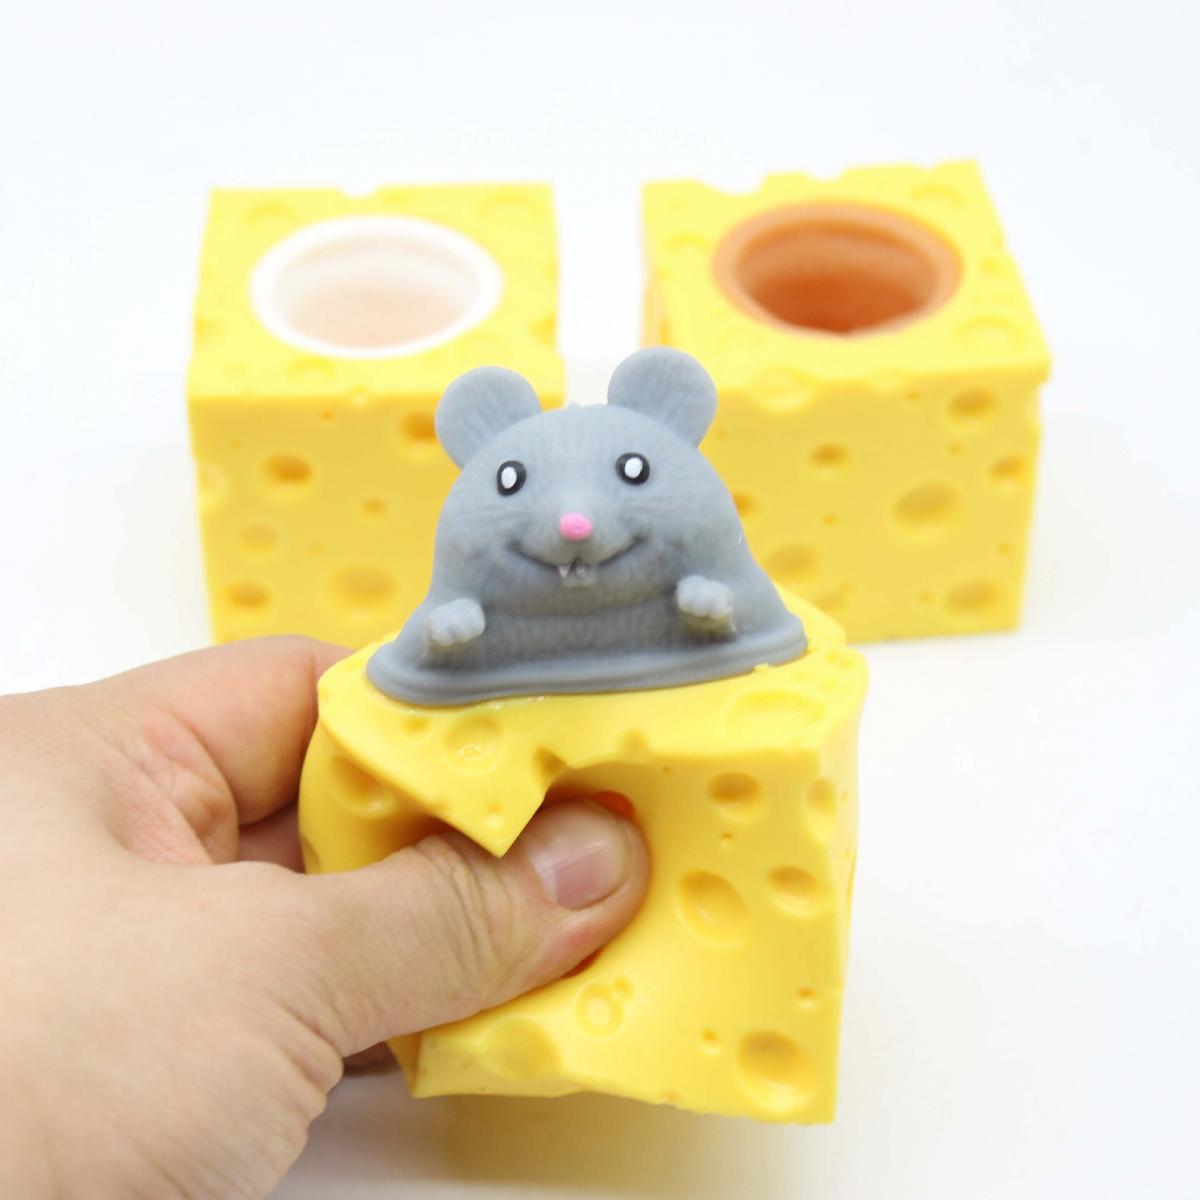 創意解壓可愛奶酪老鼠杯捏捏樂擠壓發泄松鼠杯減壓玩具 3個一套 隨機 認知玩具